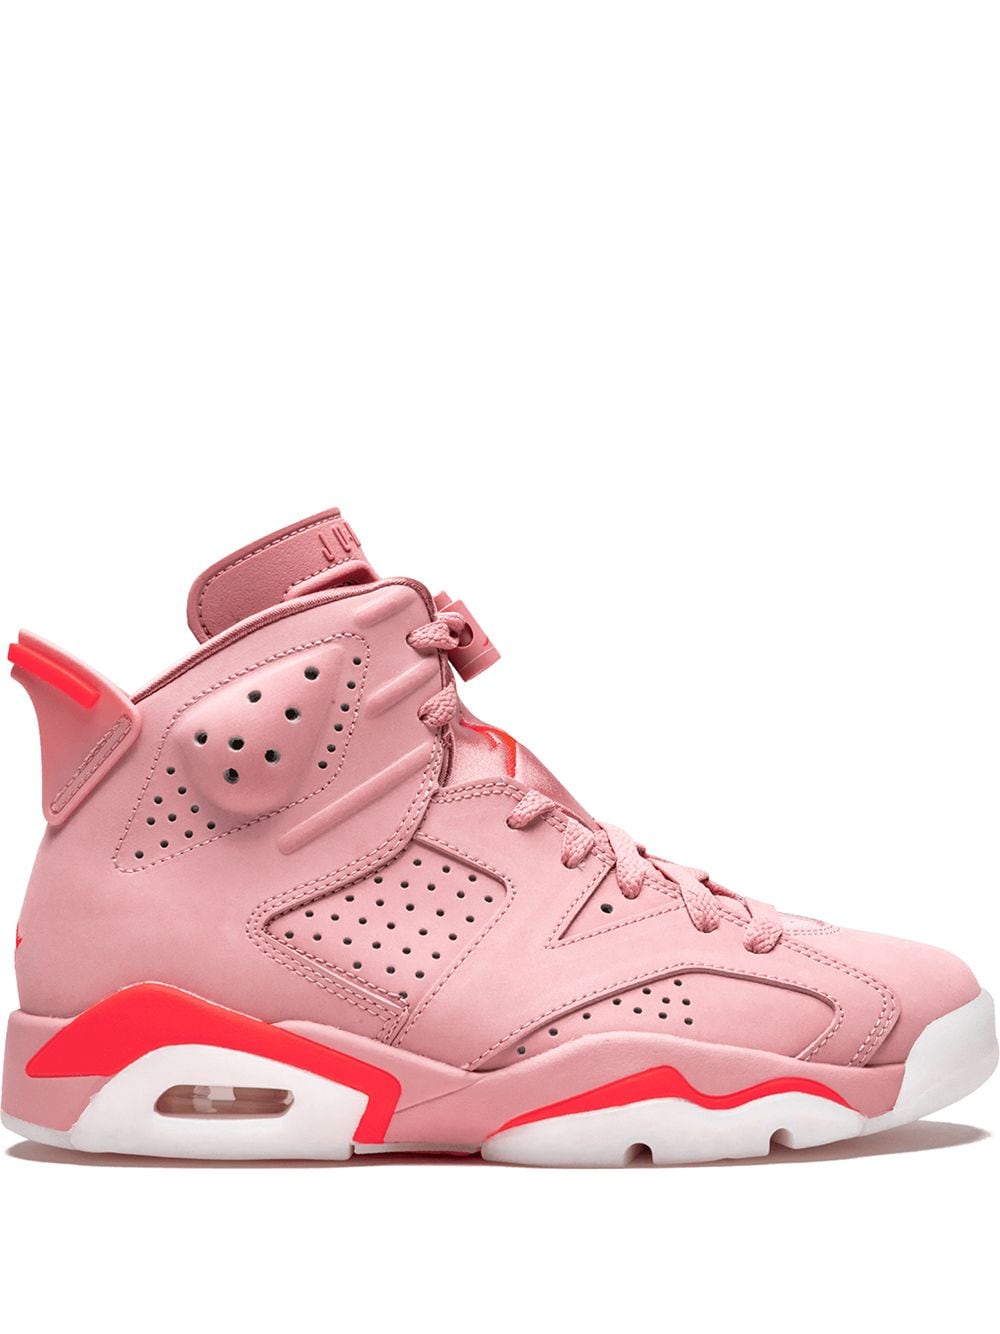 Jordan Air Jordan 6 Retro NRG "Aleali May" sneakers - Pink von Jordan